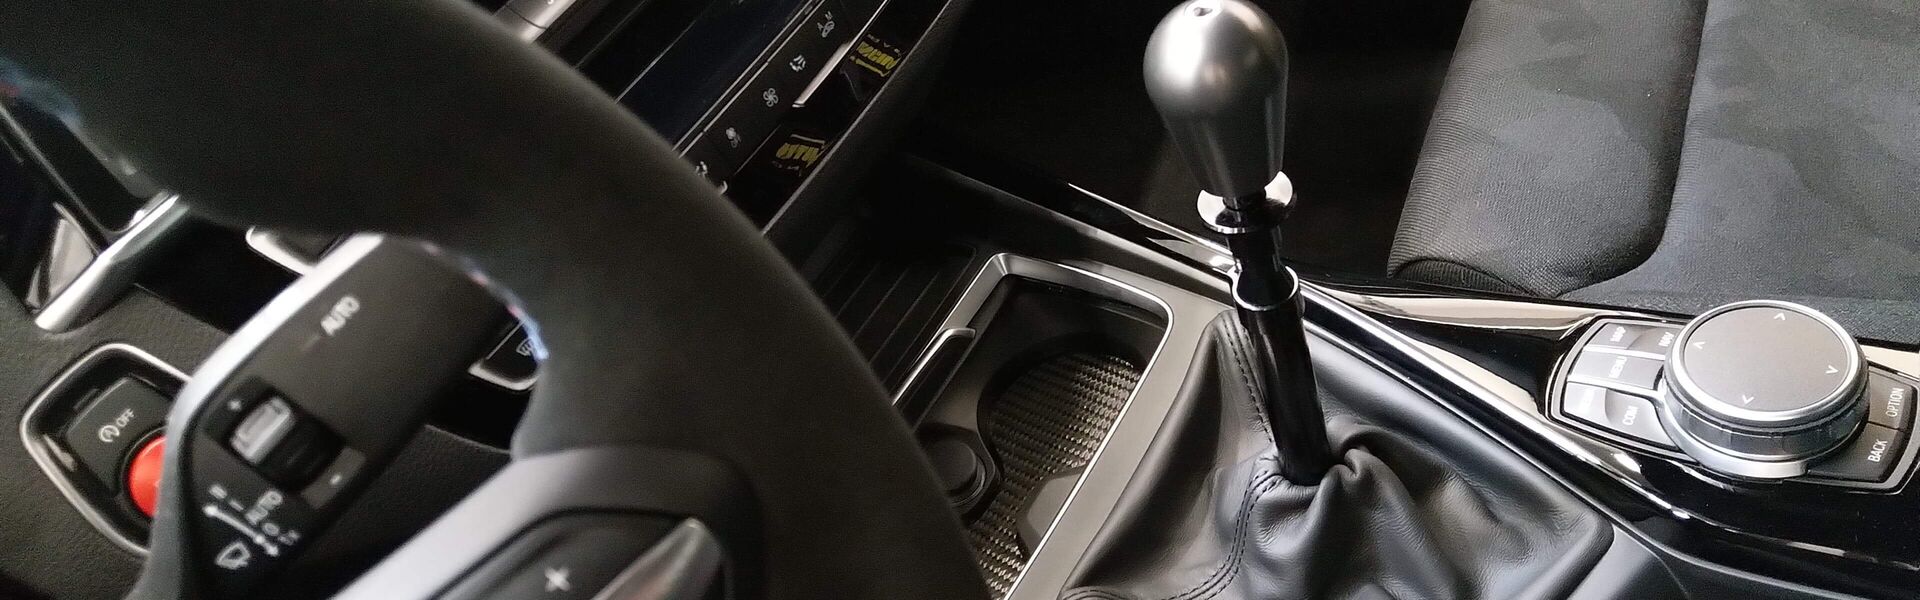 Převodovka/Řazení  pro automobil Mercedes AMG GTR